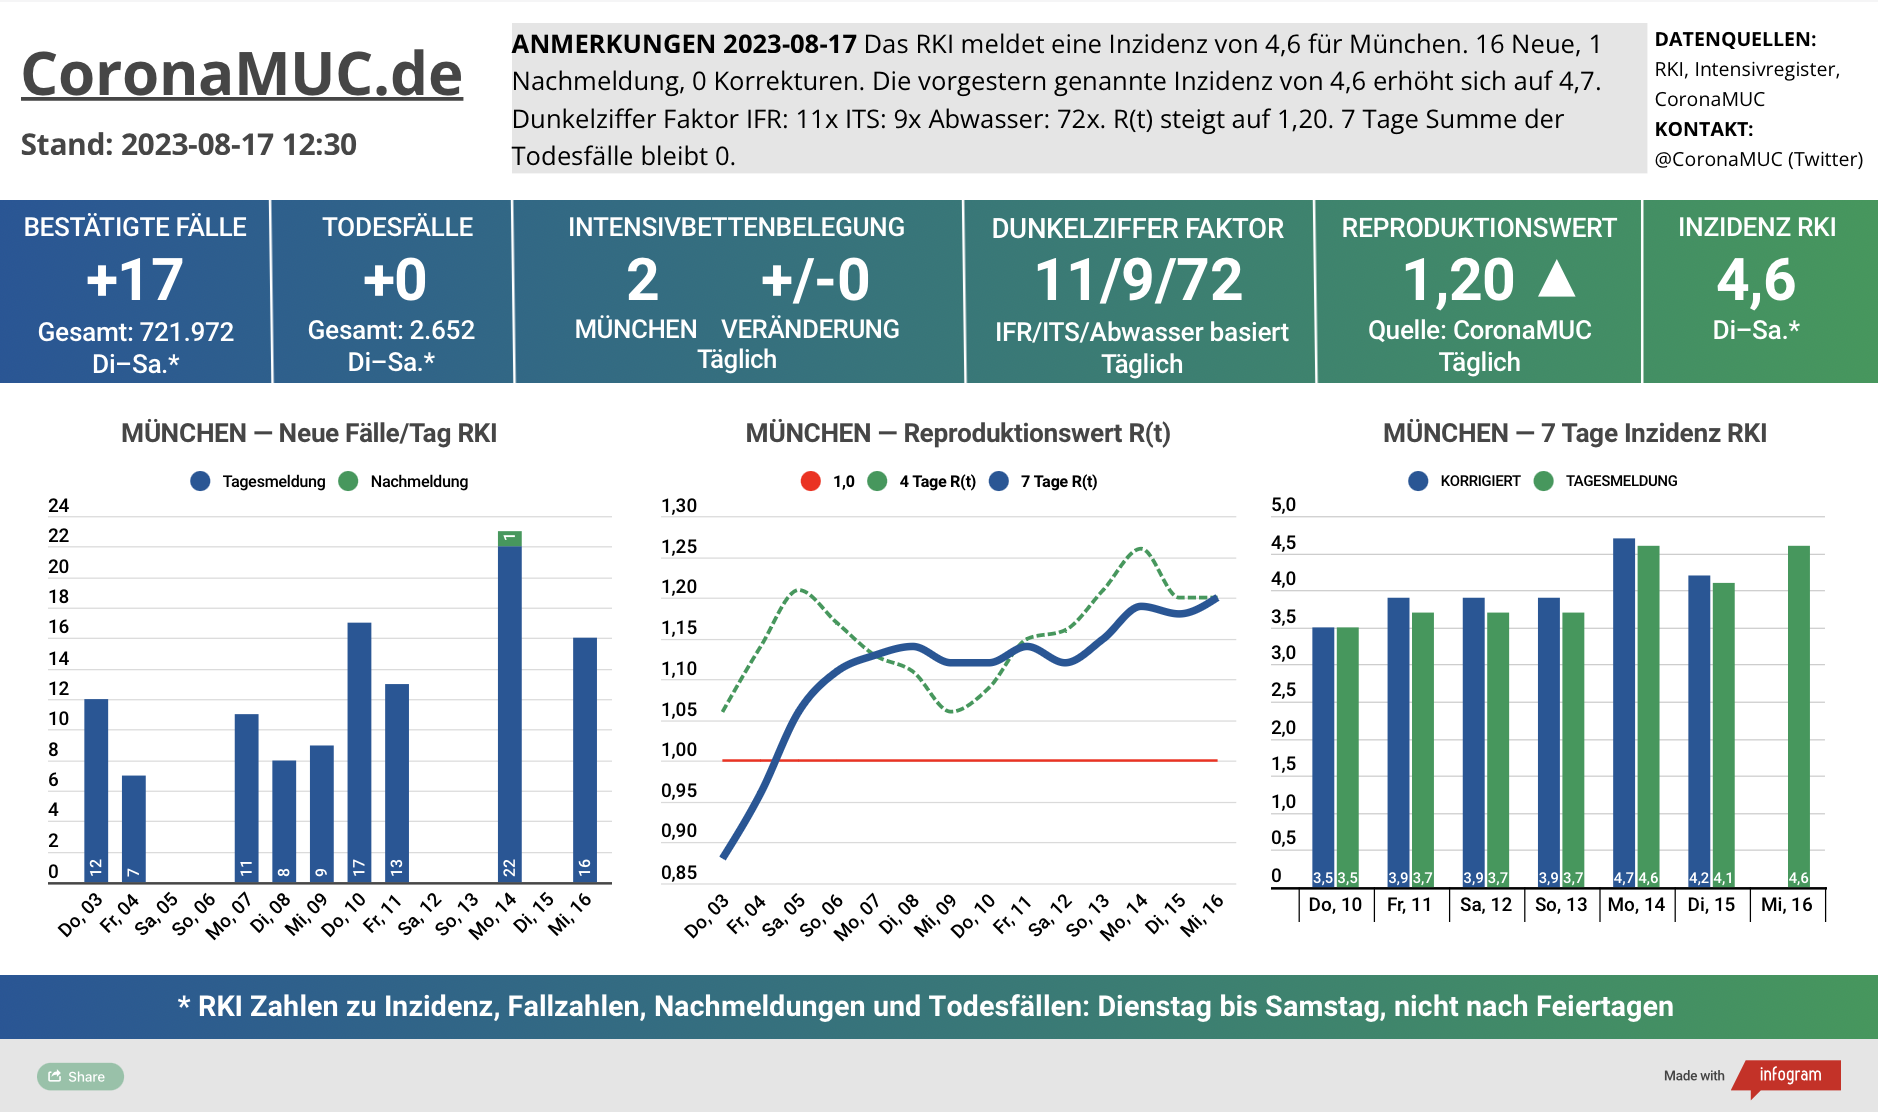 2023-08-17 Dashboard mit den Zahlen für München. Drei Graphen. Erste zeigt Neu- und Nachmeldungen, steigende Zahlen. Zweite zeigt R(t) Wert für München, der auf 1,20 steigt. Dritte zeigt Inzidenz, die zwar weiter weit unter 50 liegt aber wegen mangelnder PCR Tests kaum noch aussagekräftig ist.